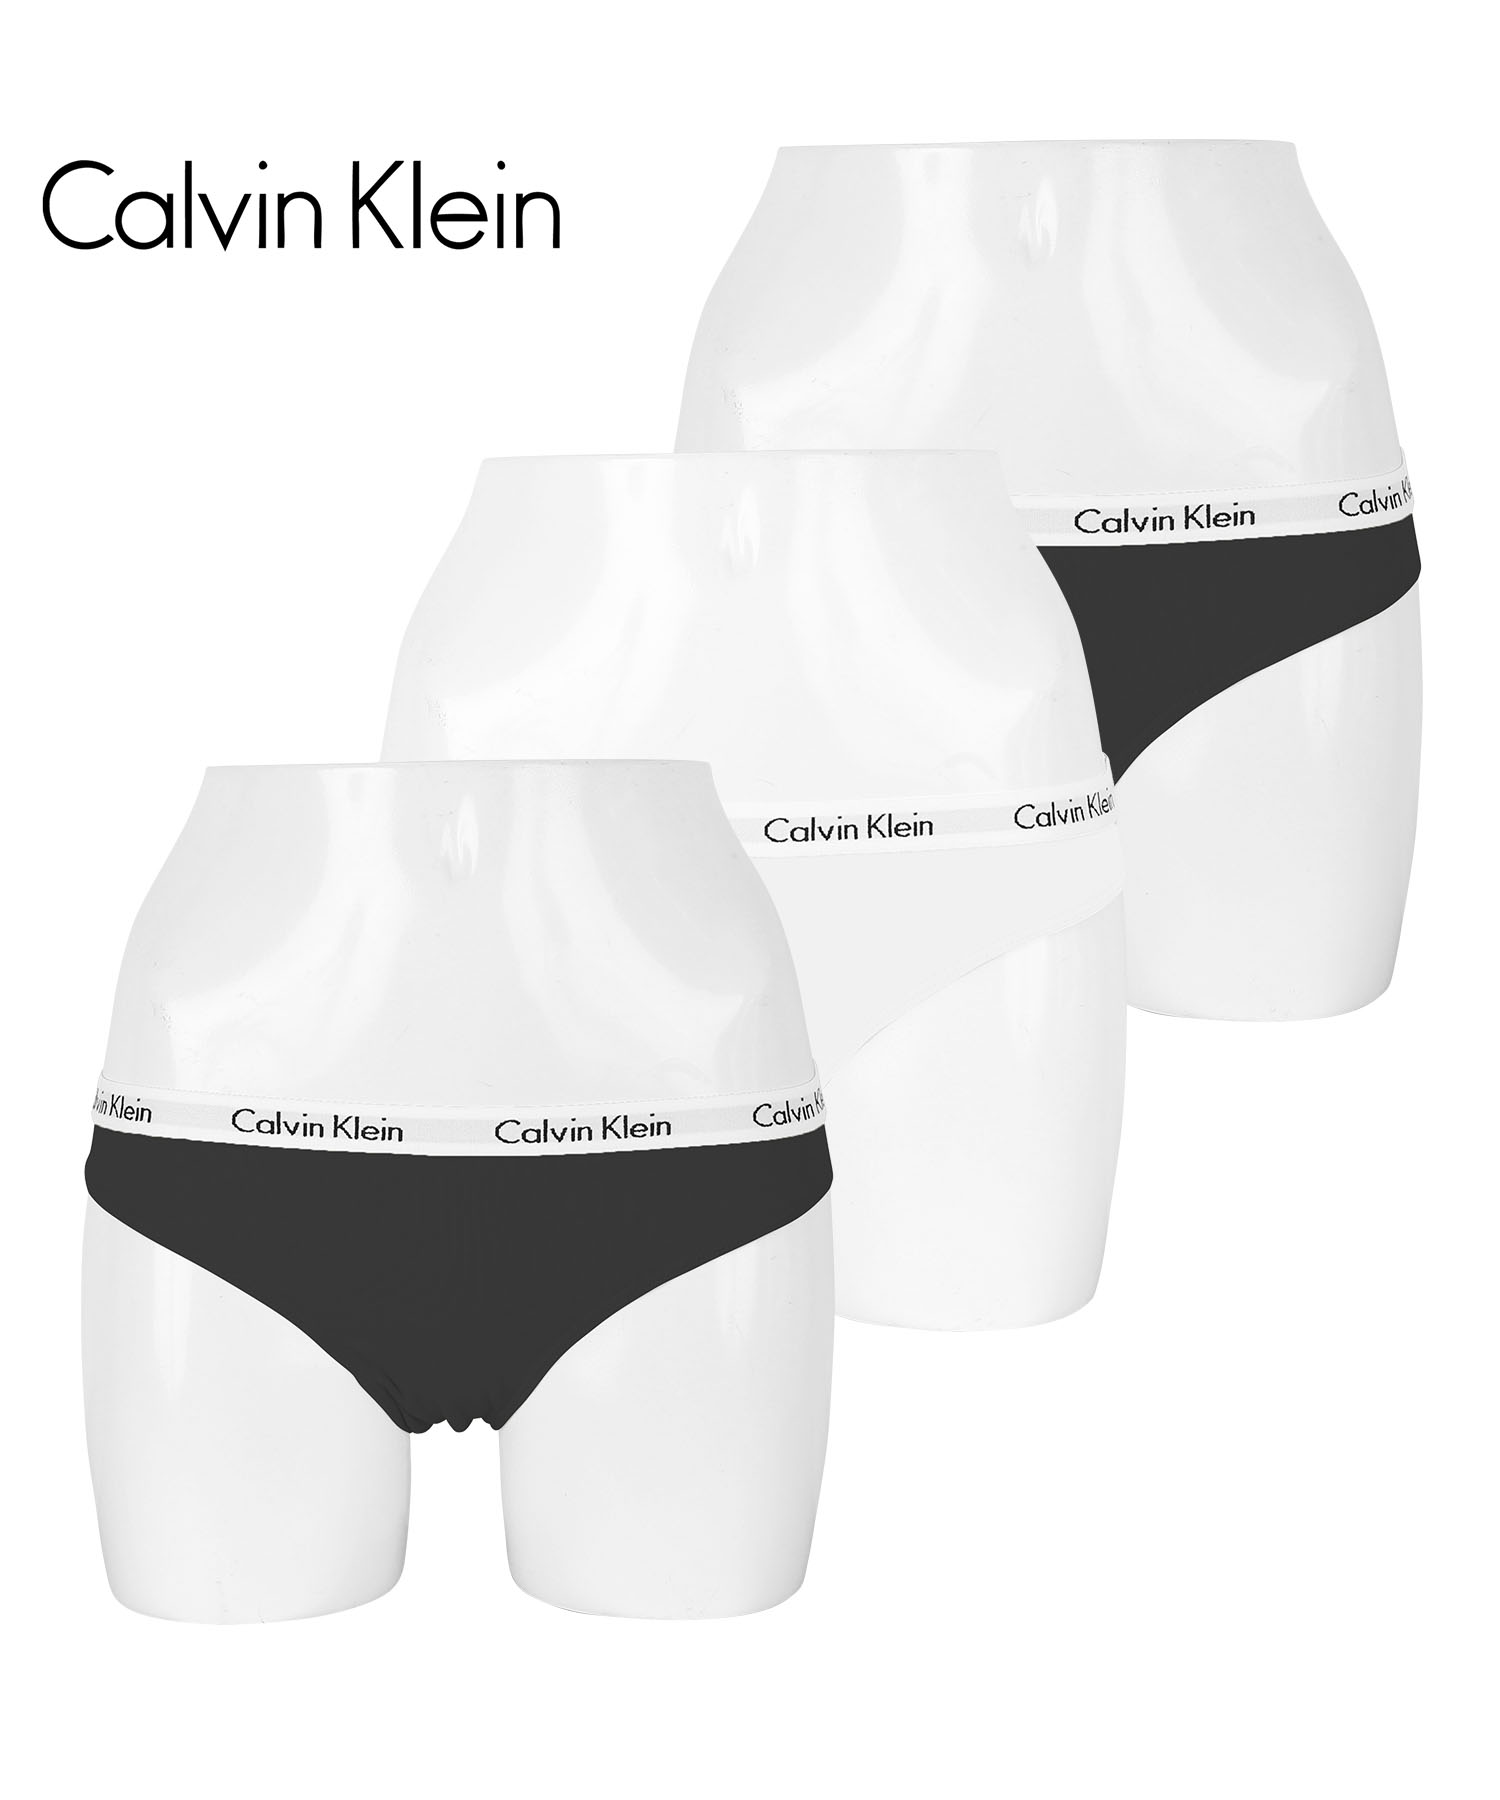 カルバンクライン ショーツ 3枚セット レディース Calvin Klein アンダーウェア アンダ...